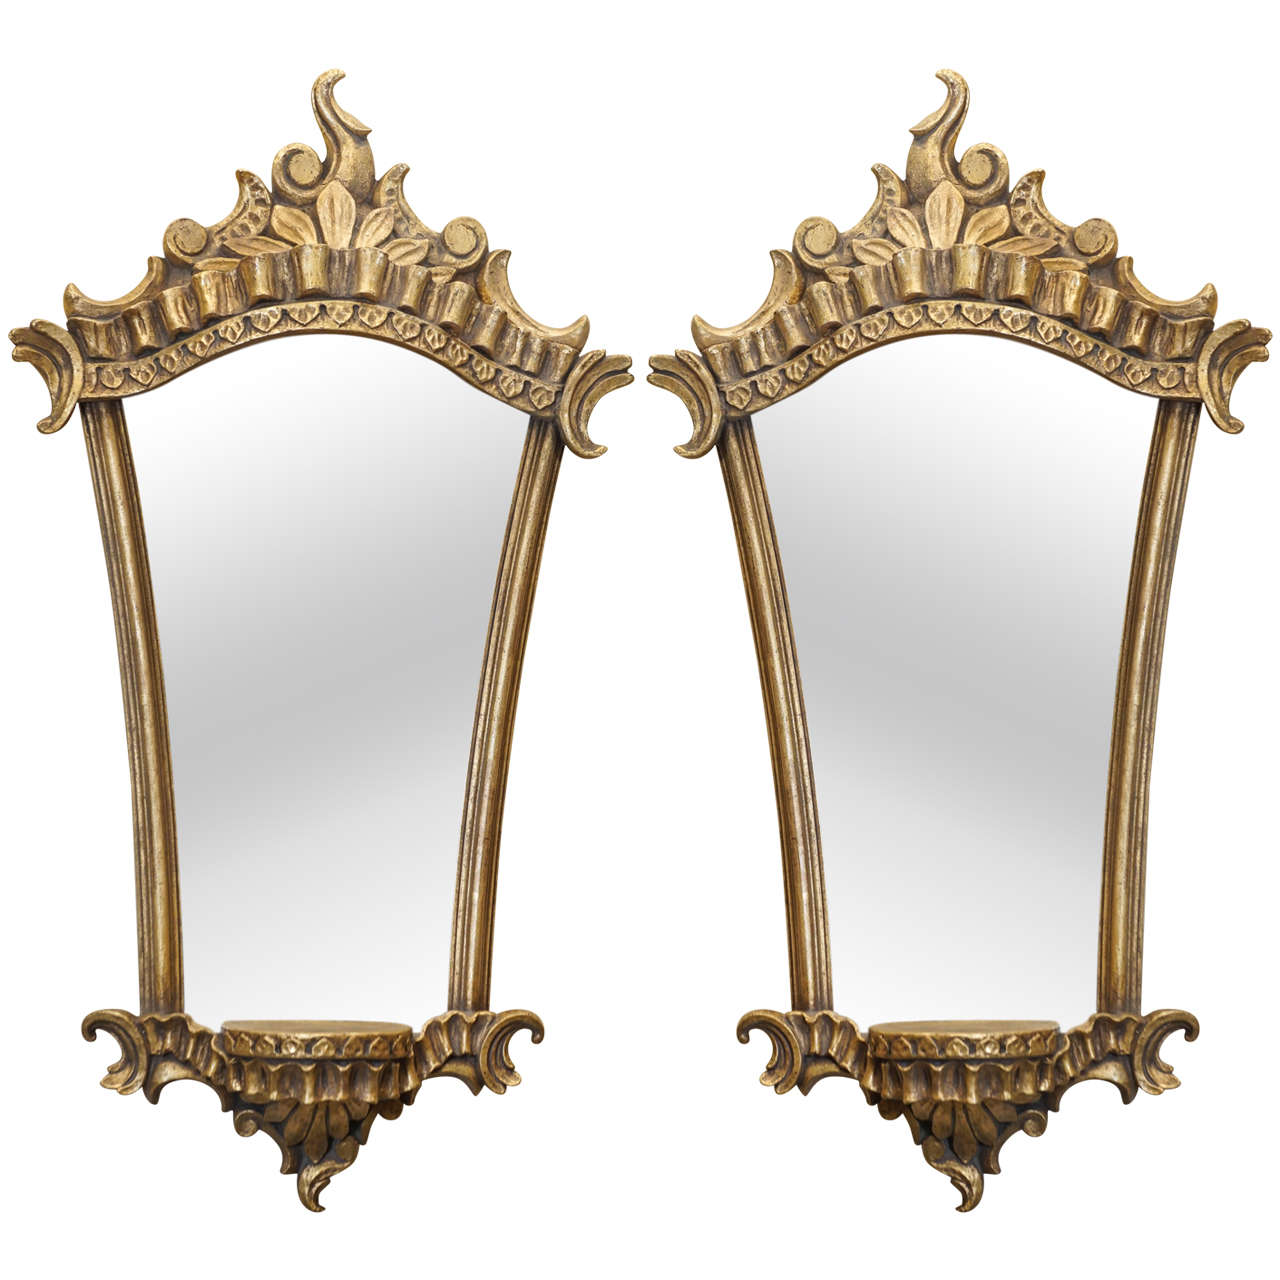 Paire de supports muraux italiens de style baroque vintage dorés et miroirs